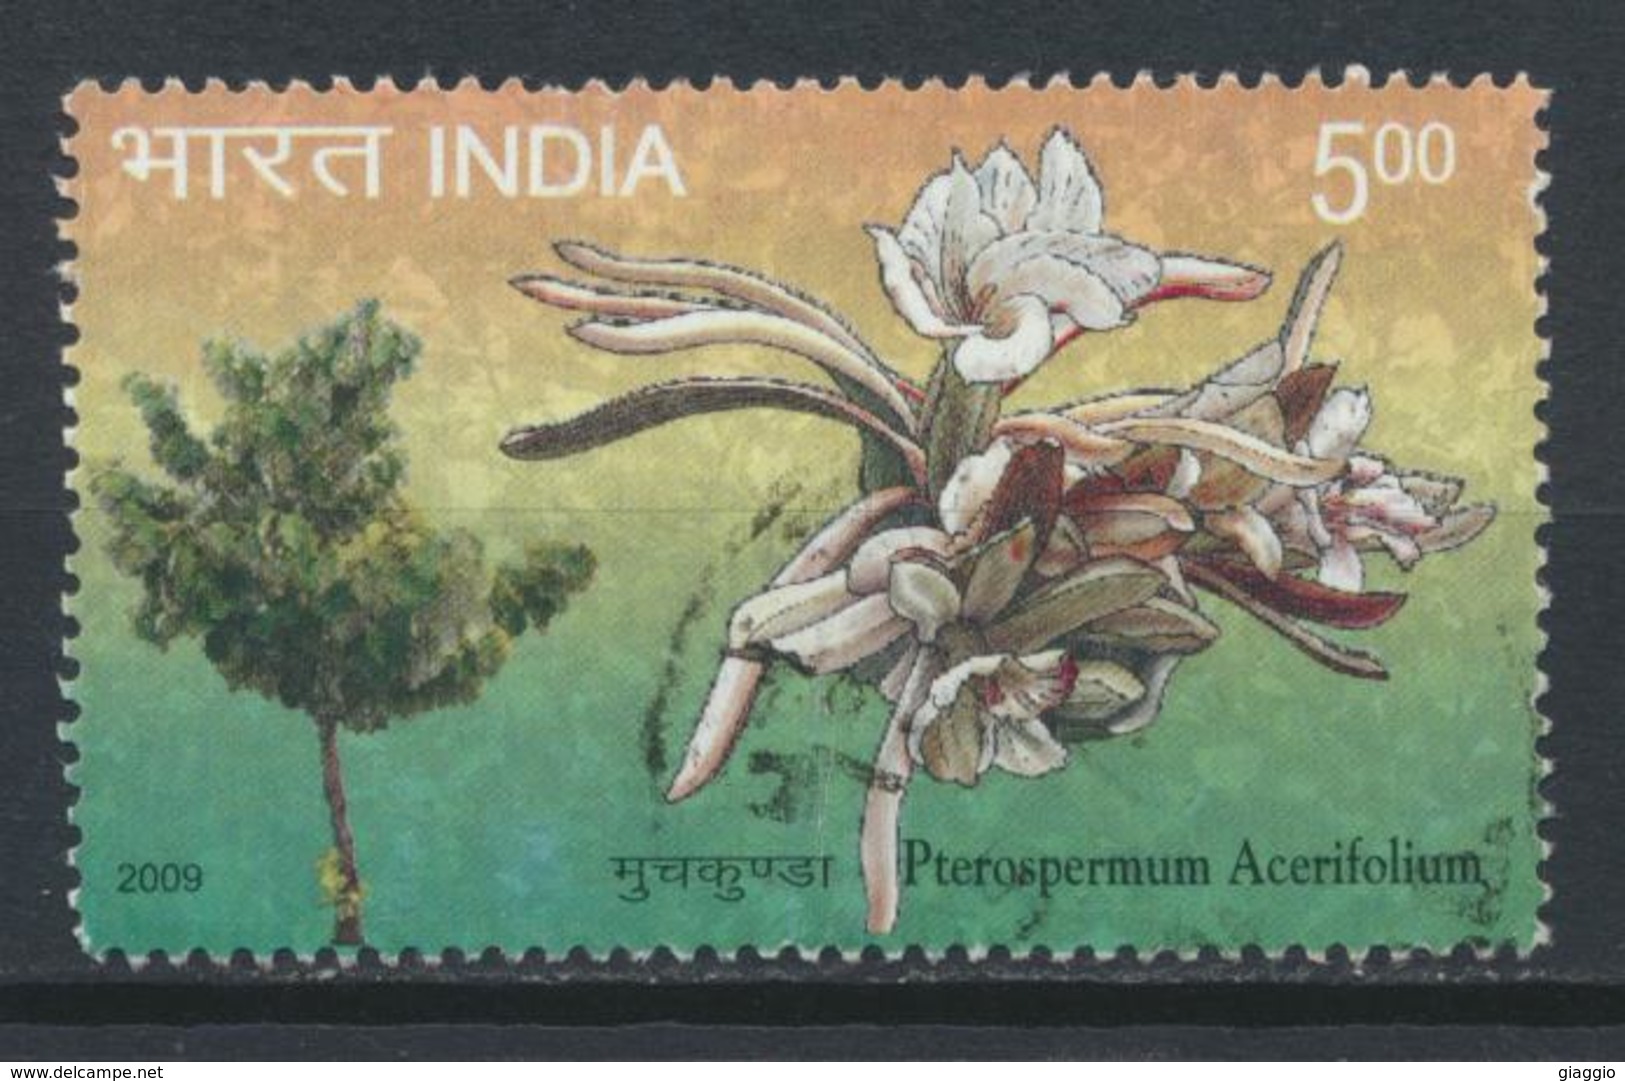 °°° INDIA - PTEROSPERMUM ACERIFOLIUM - 2009 °°° - Used Stamps